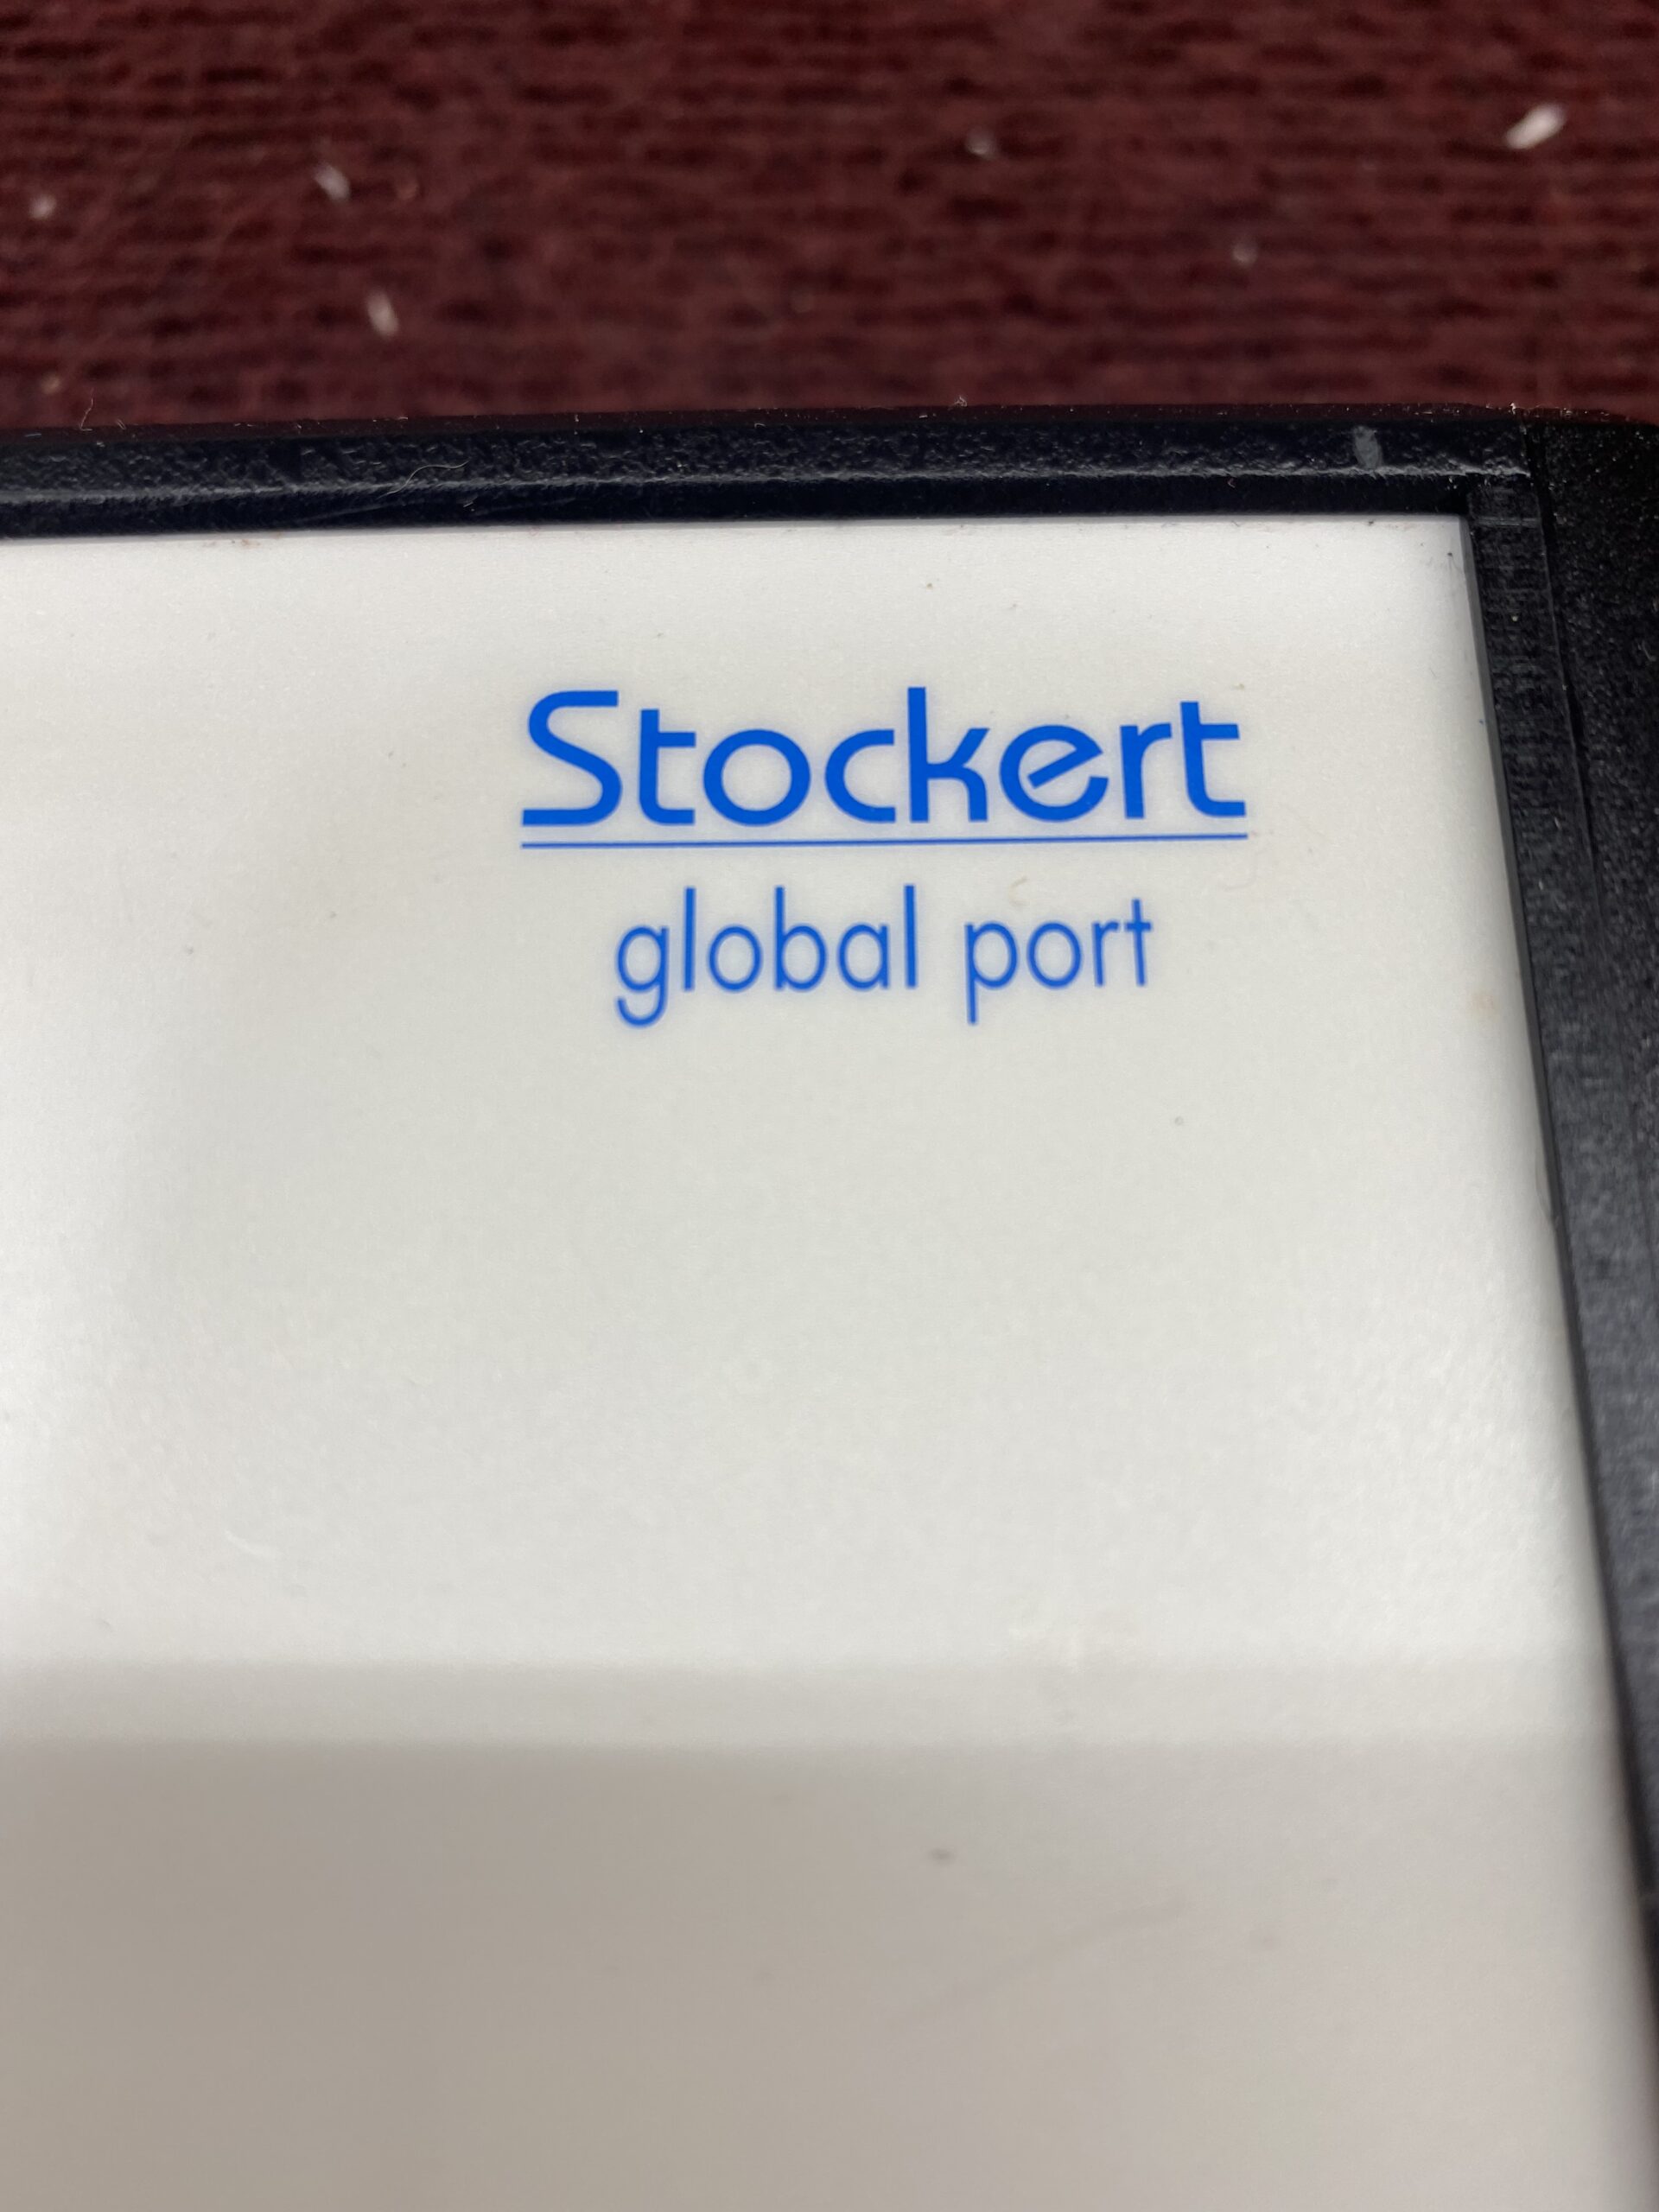 Stockert Gmbh Global Port - Medsold